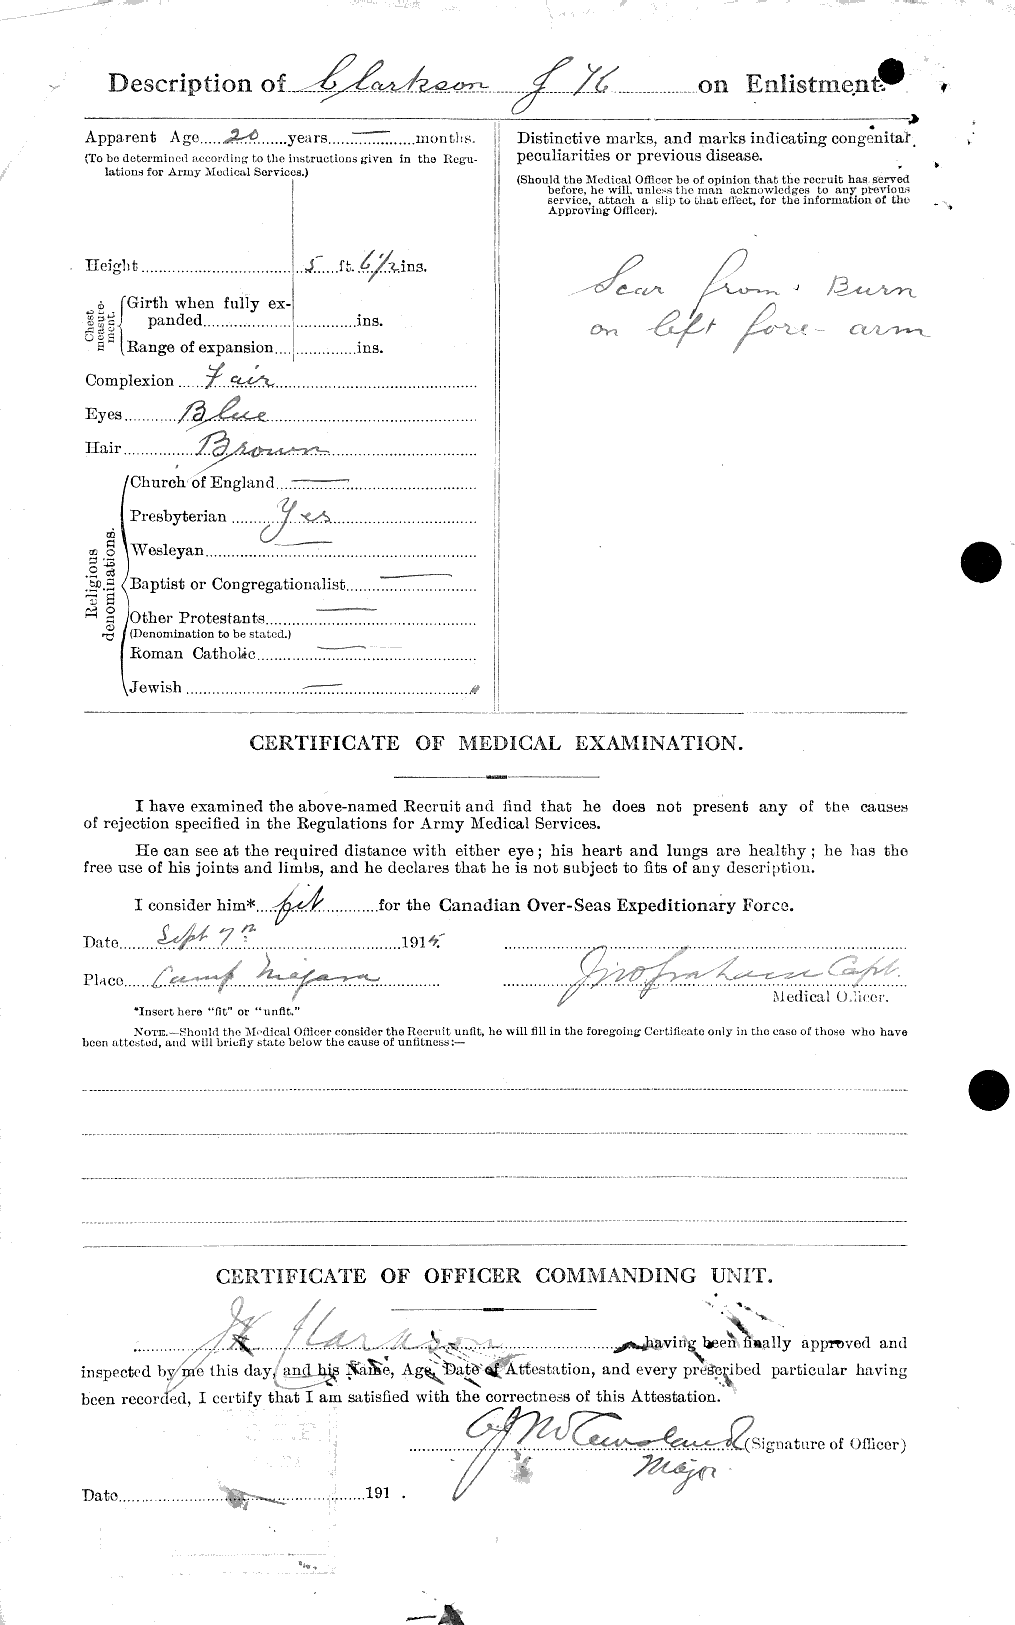 Dossiers du Personnel de la Première Guerre mondiale - CEC 021448b